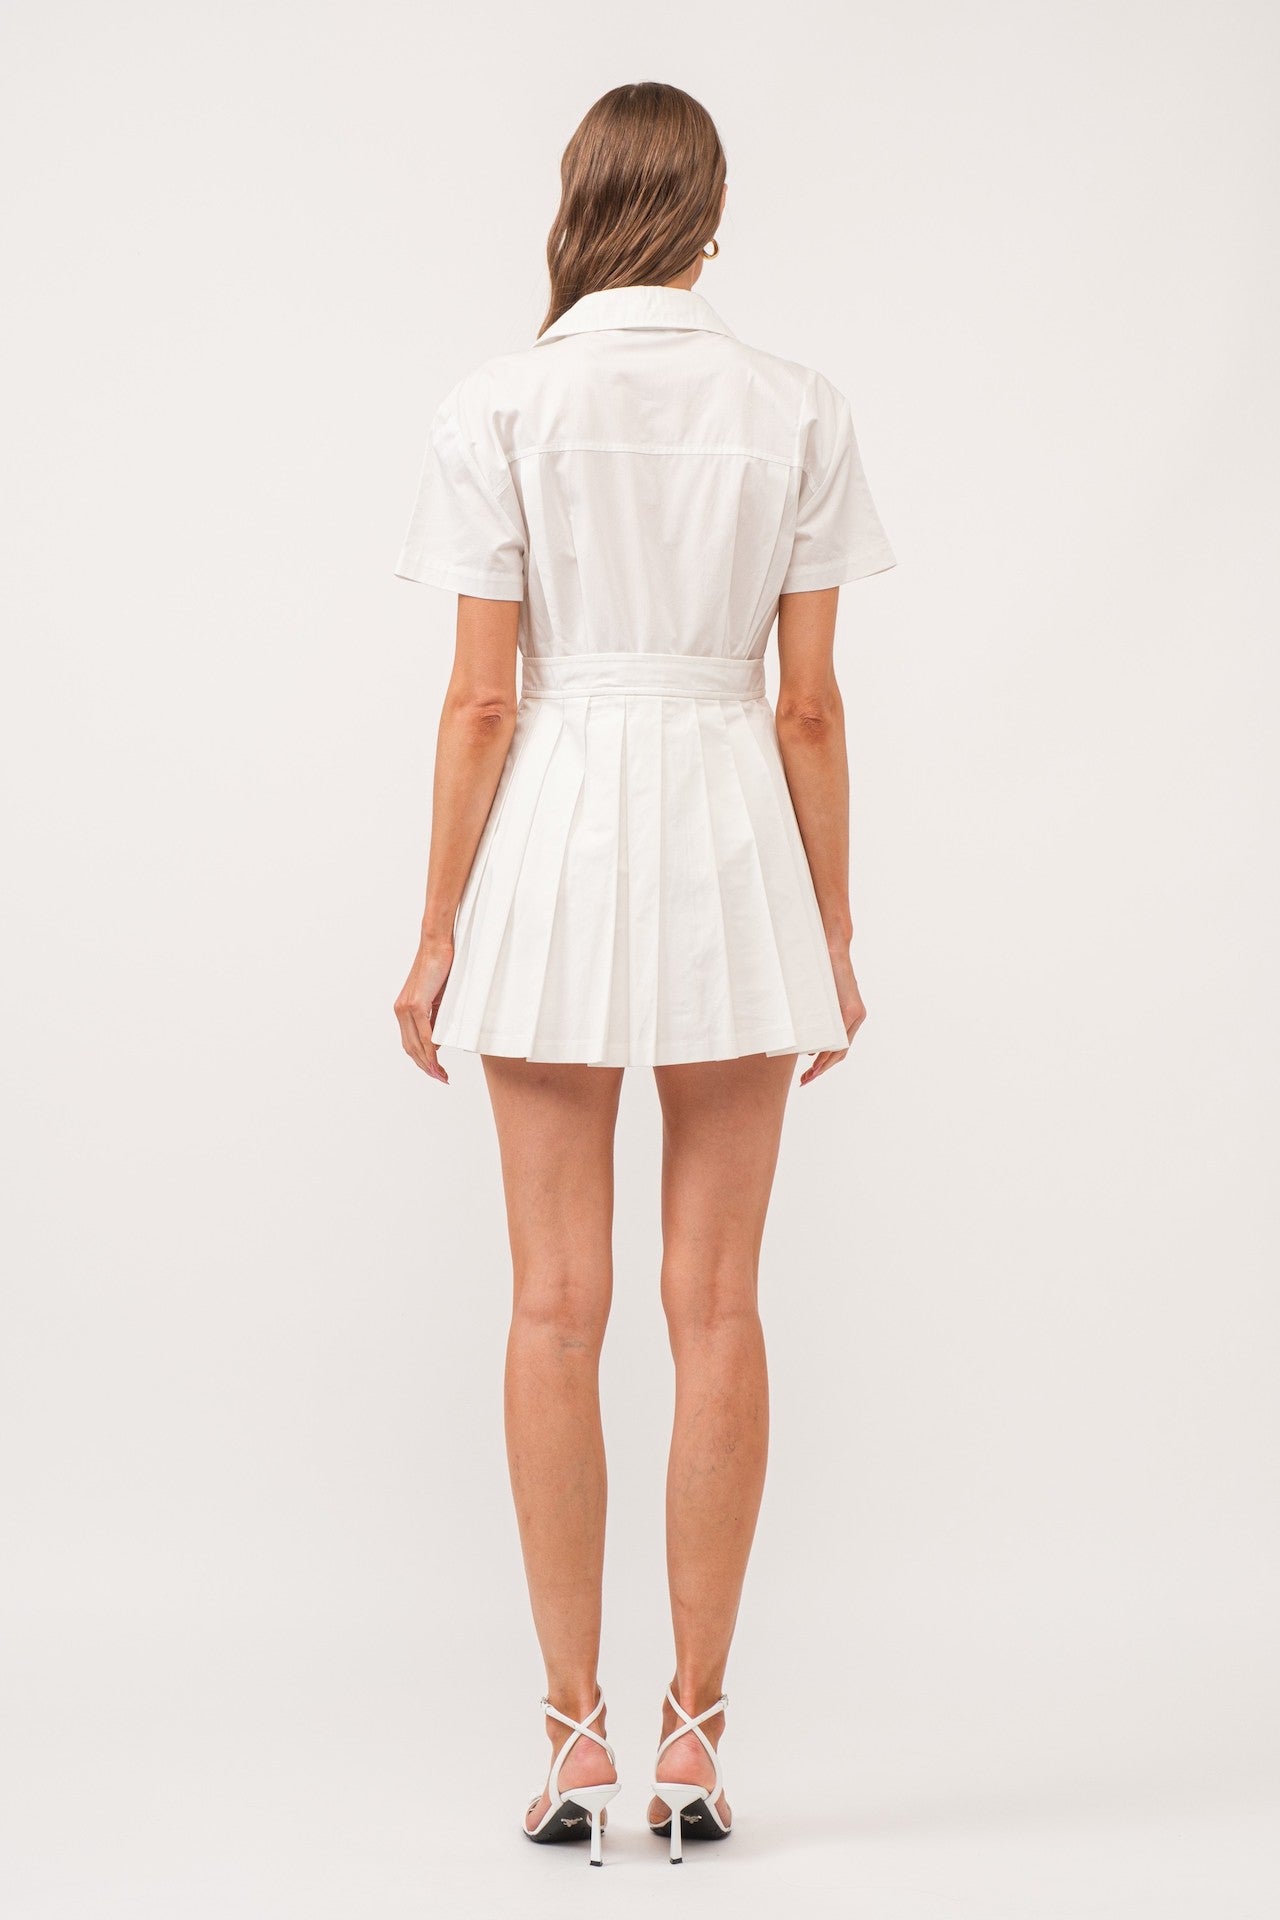 White Romper Dress